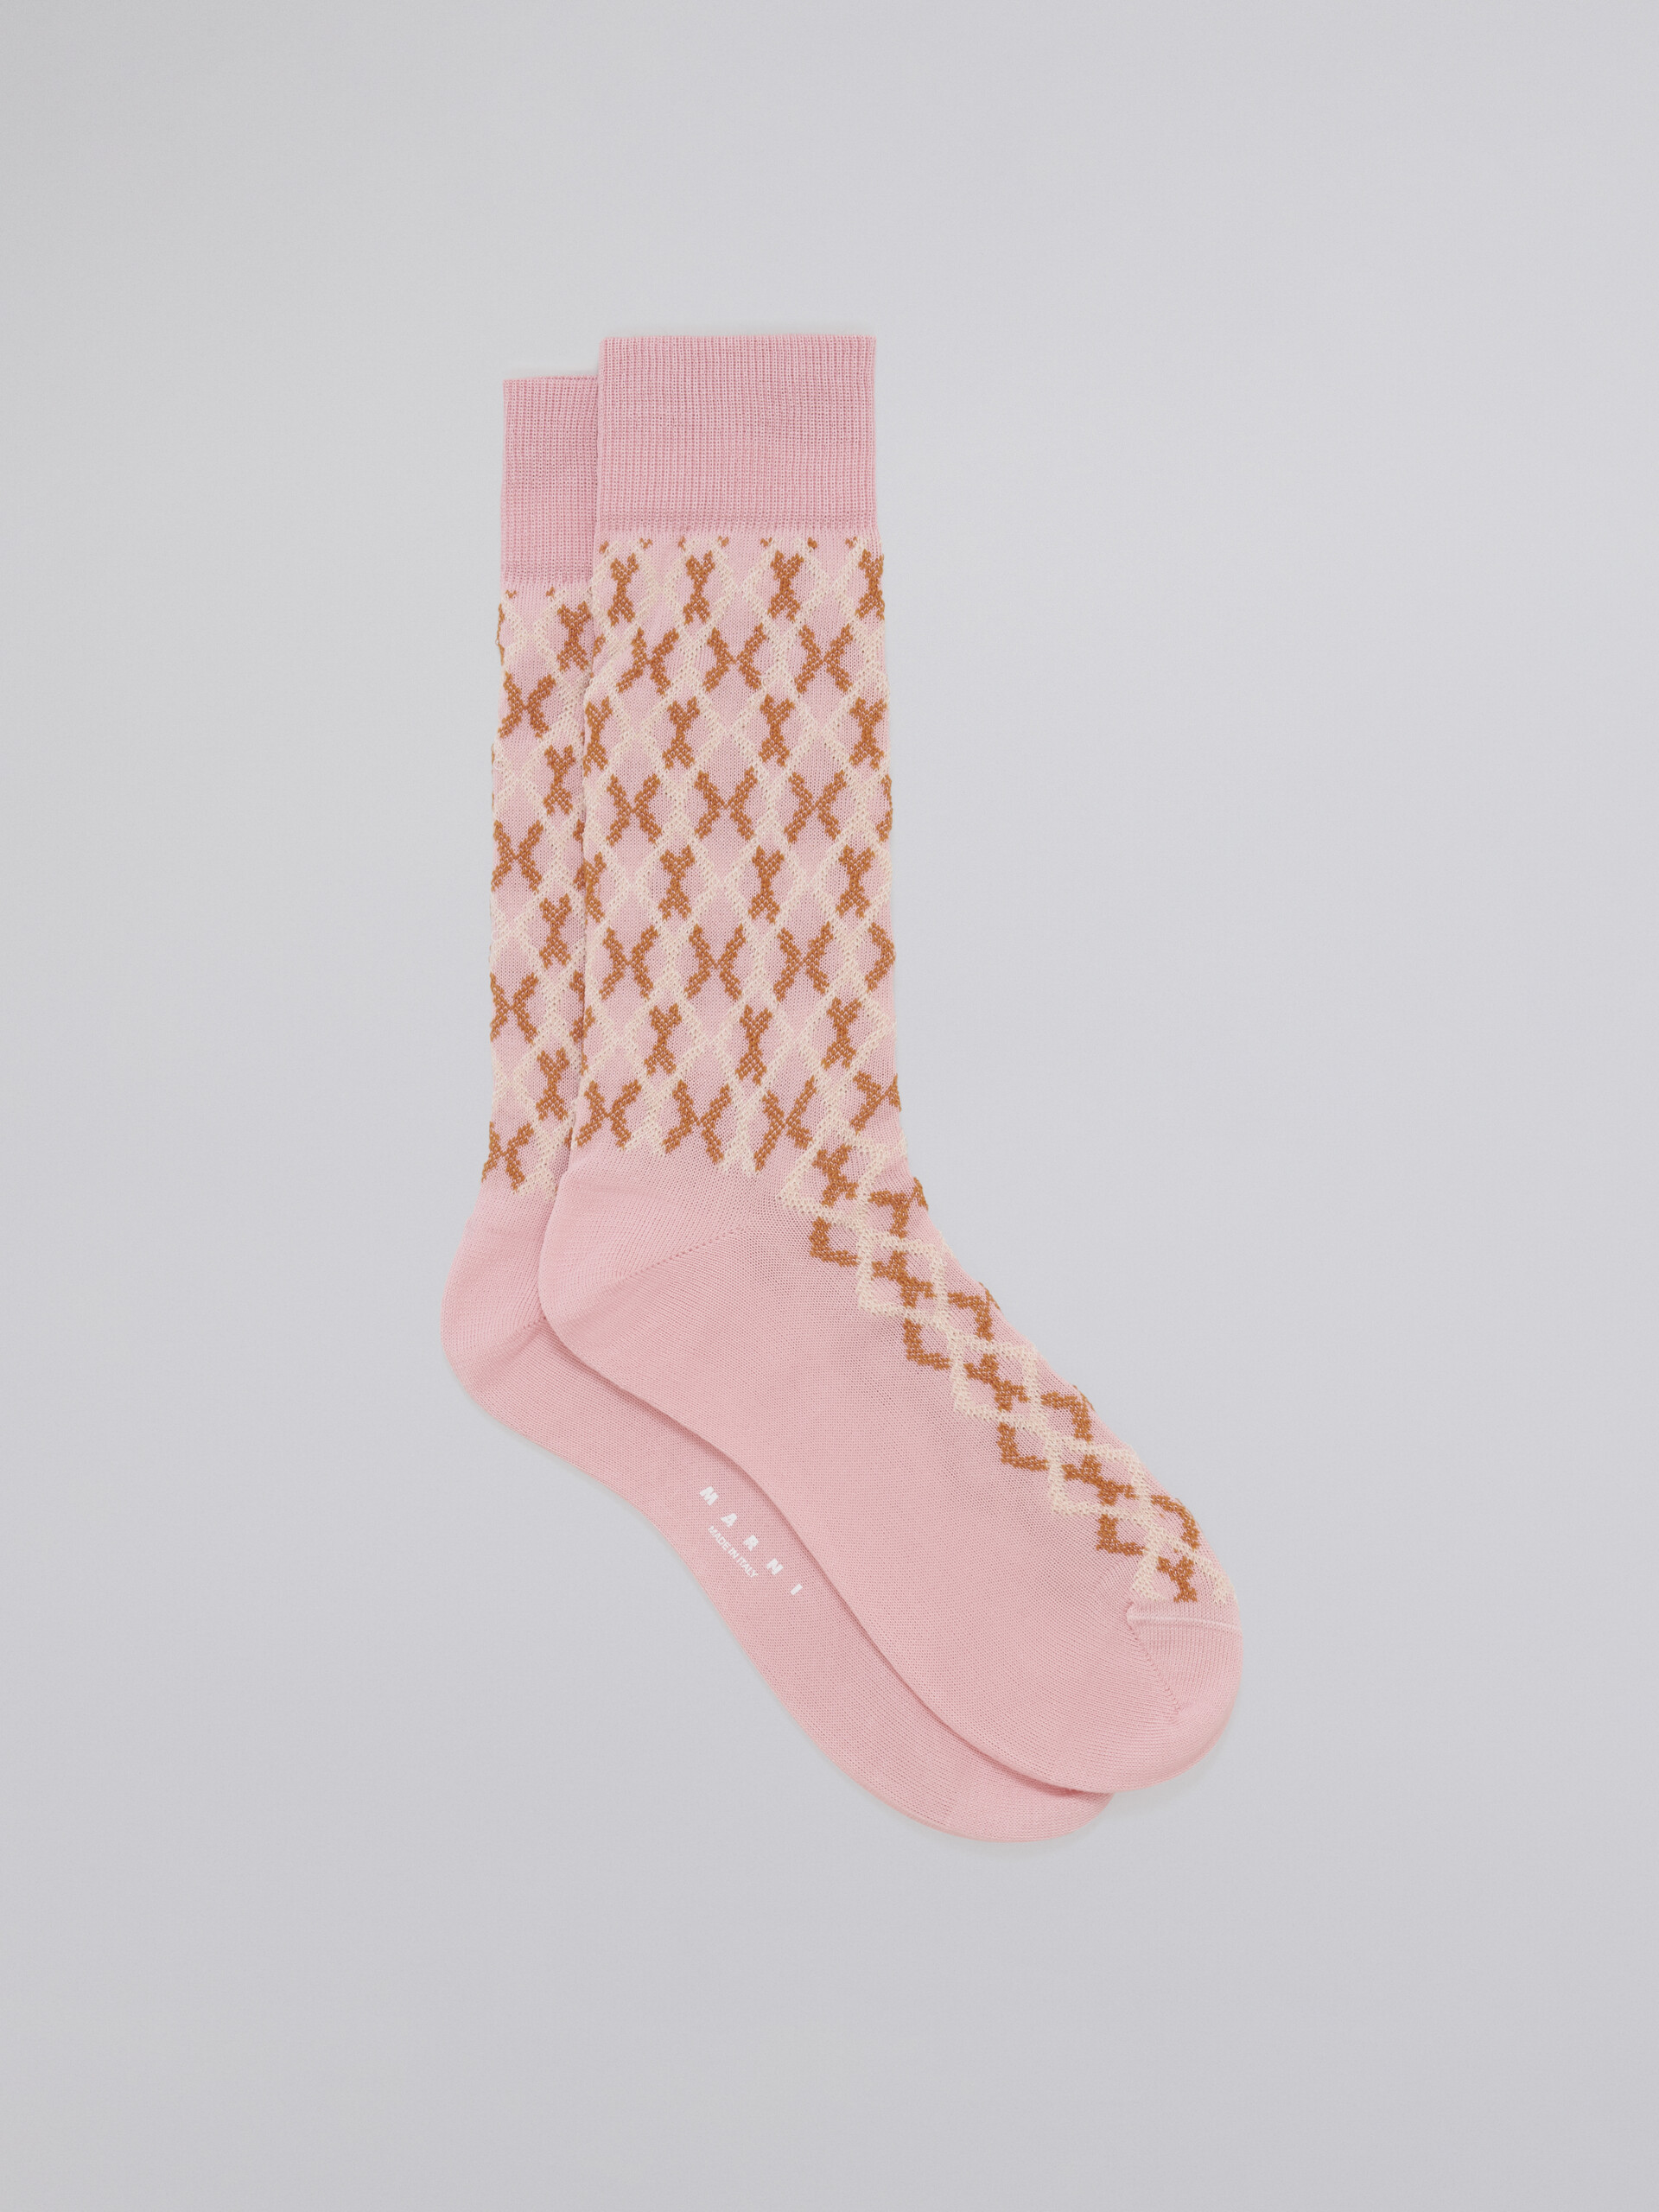 Calza in cotone jacquard e nylon disegno micro riquadro rosa - Calze - Image 1